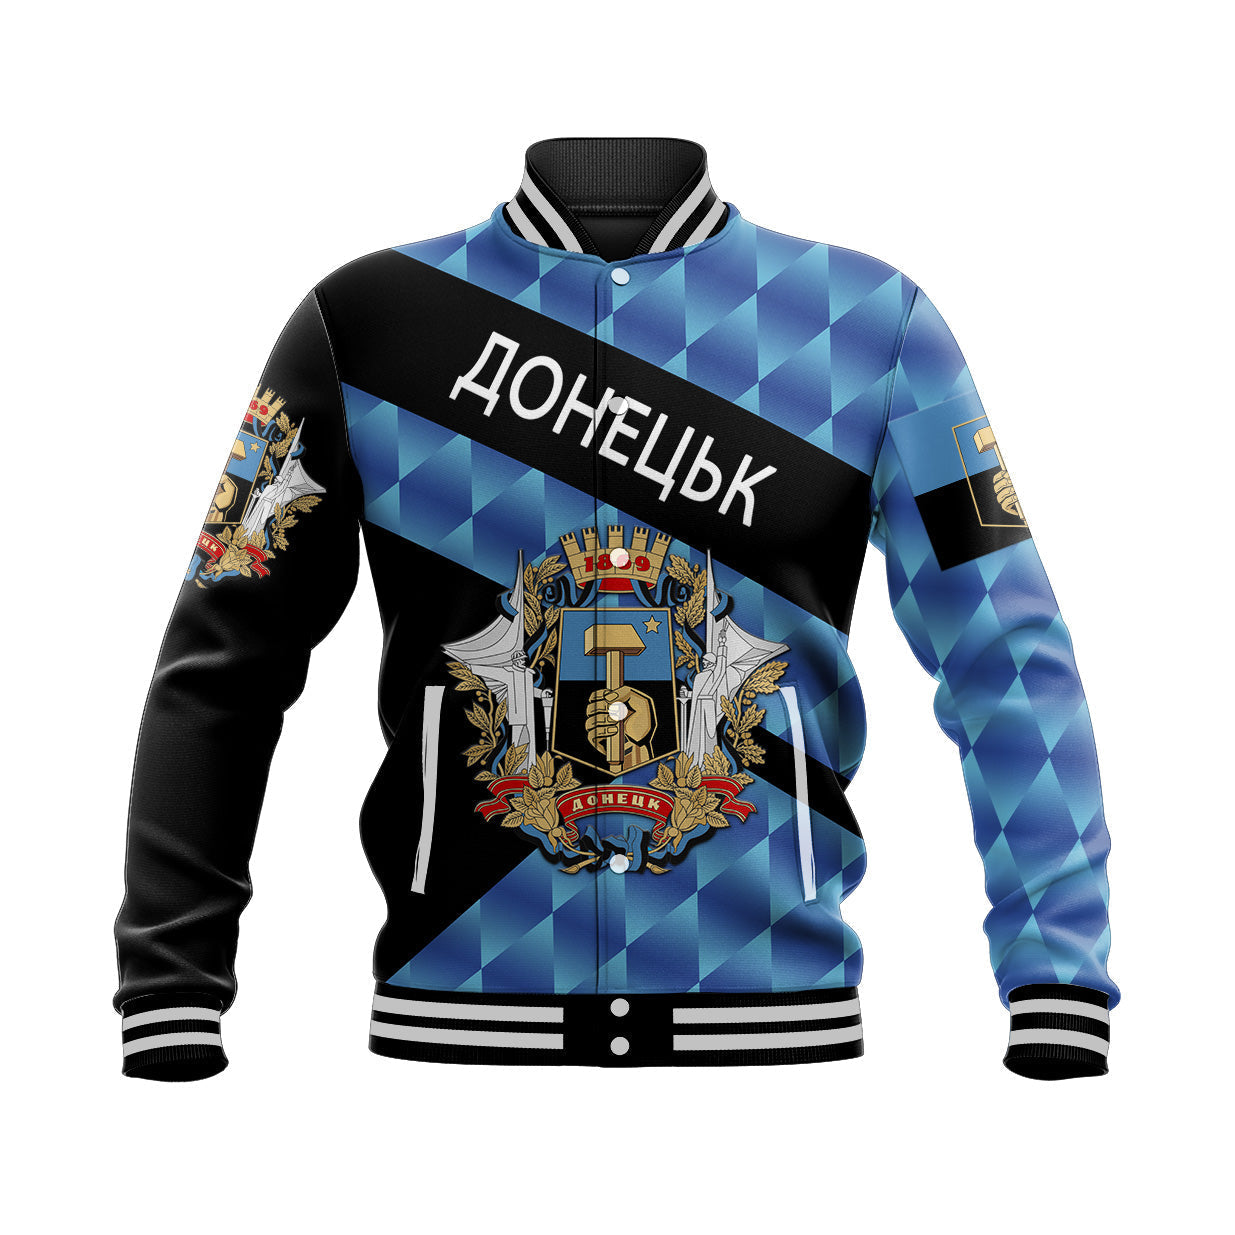 ukraine-donetsk-baseball-jacket-sporty-style